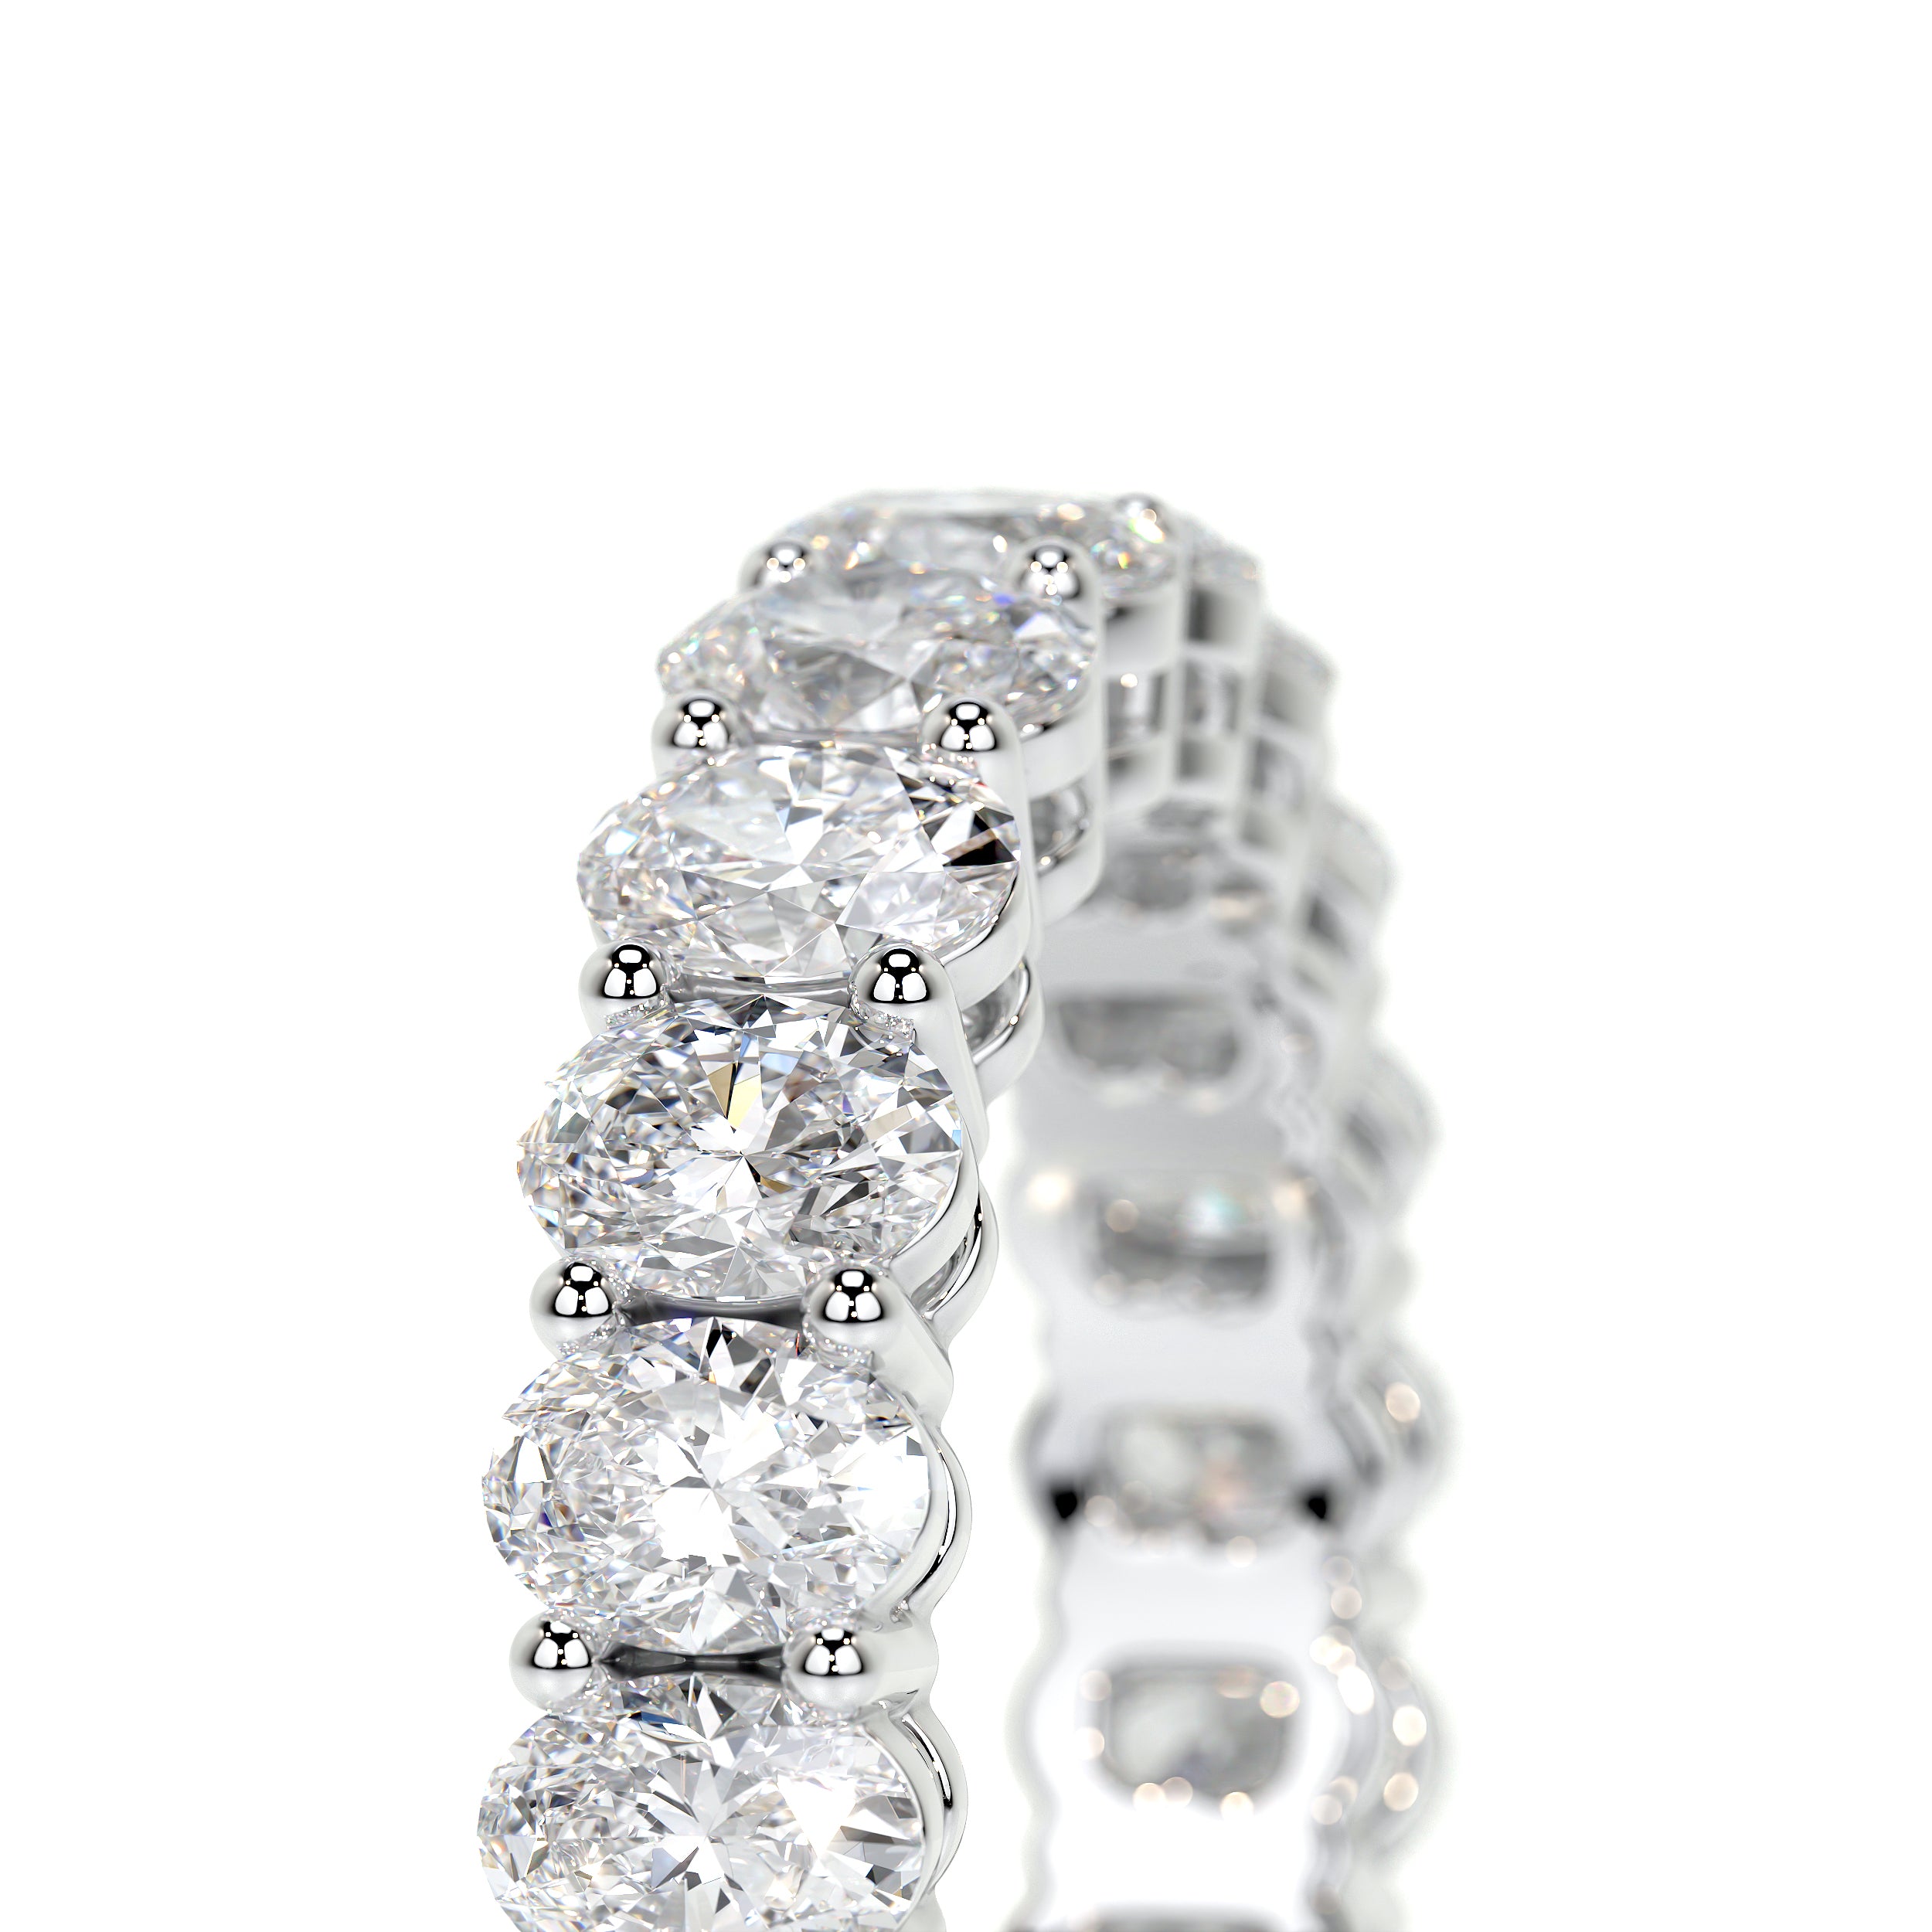 Julia Lab Grown Diamond Wedding Ring   (3.5 Carat) -14K White Gold